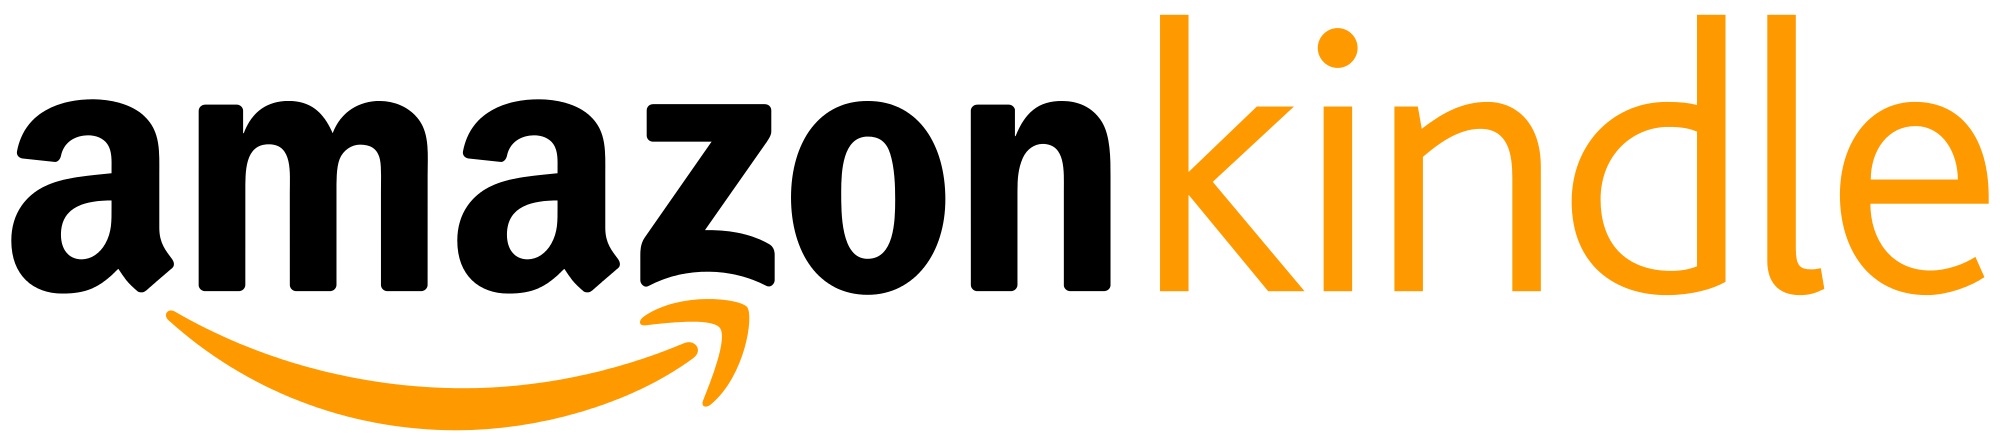 Amazon_Kindle_logo.svg_